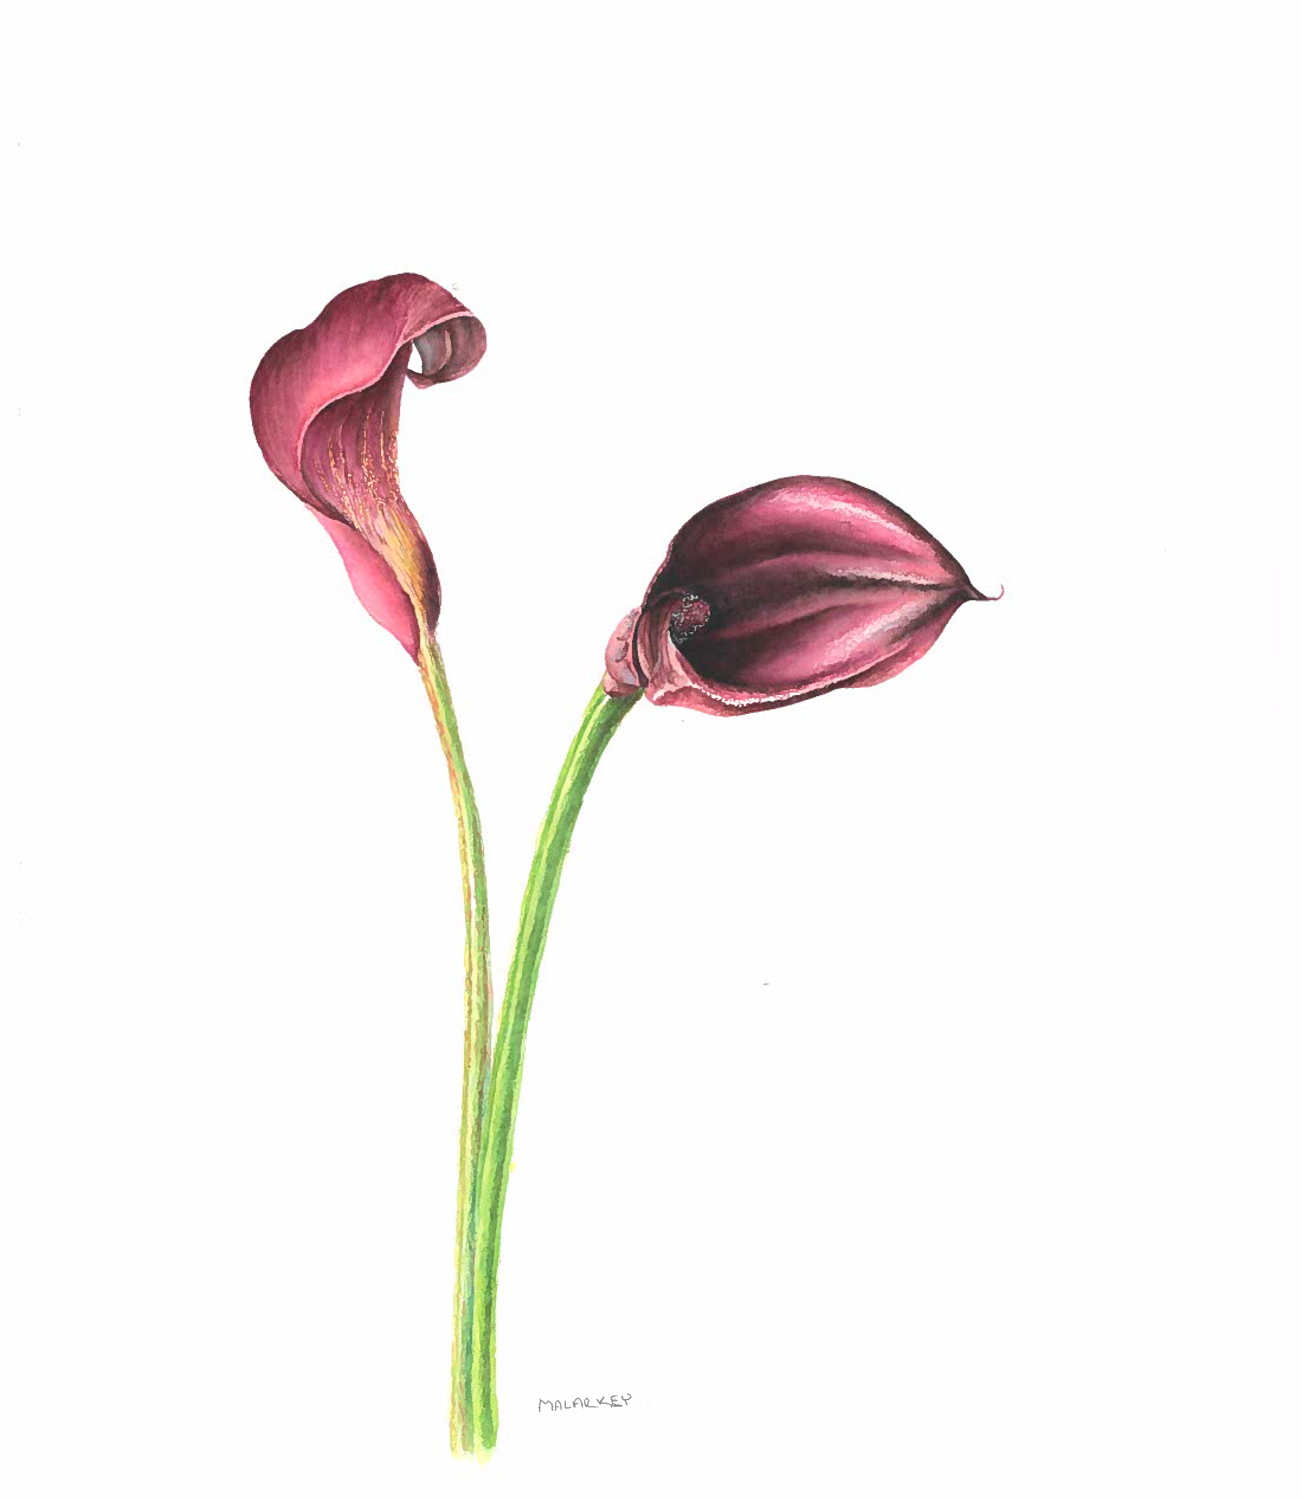 Zantedeschia aethiopica Calla lily Watercolor 11 x 11.5. Brandi Malarkey, Artist. ItsAllMalarkey.com